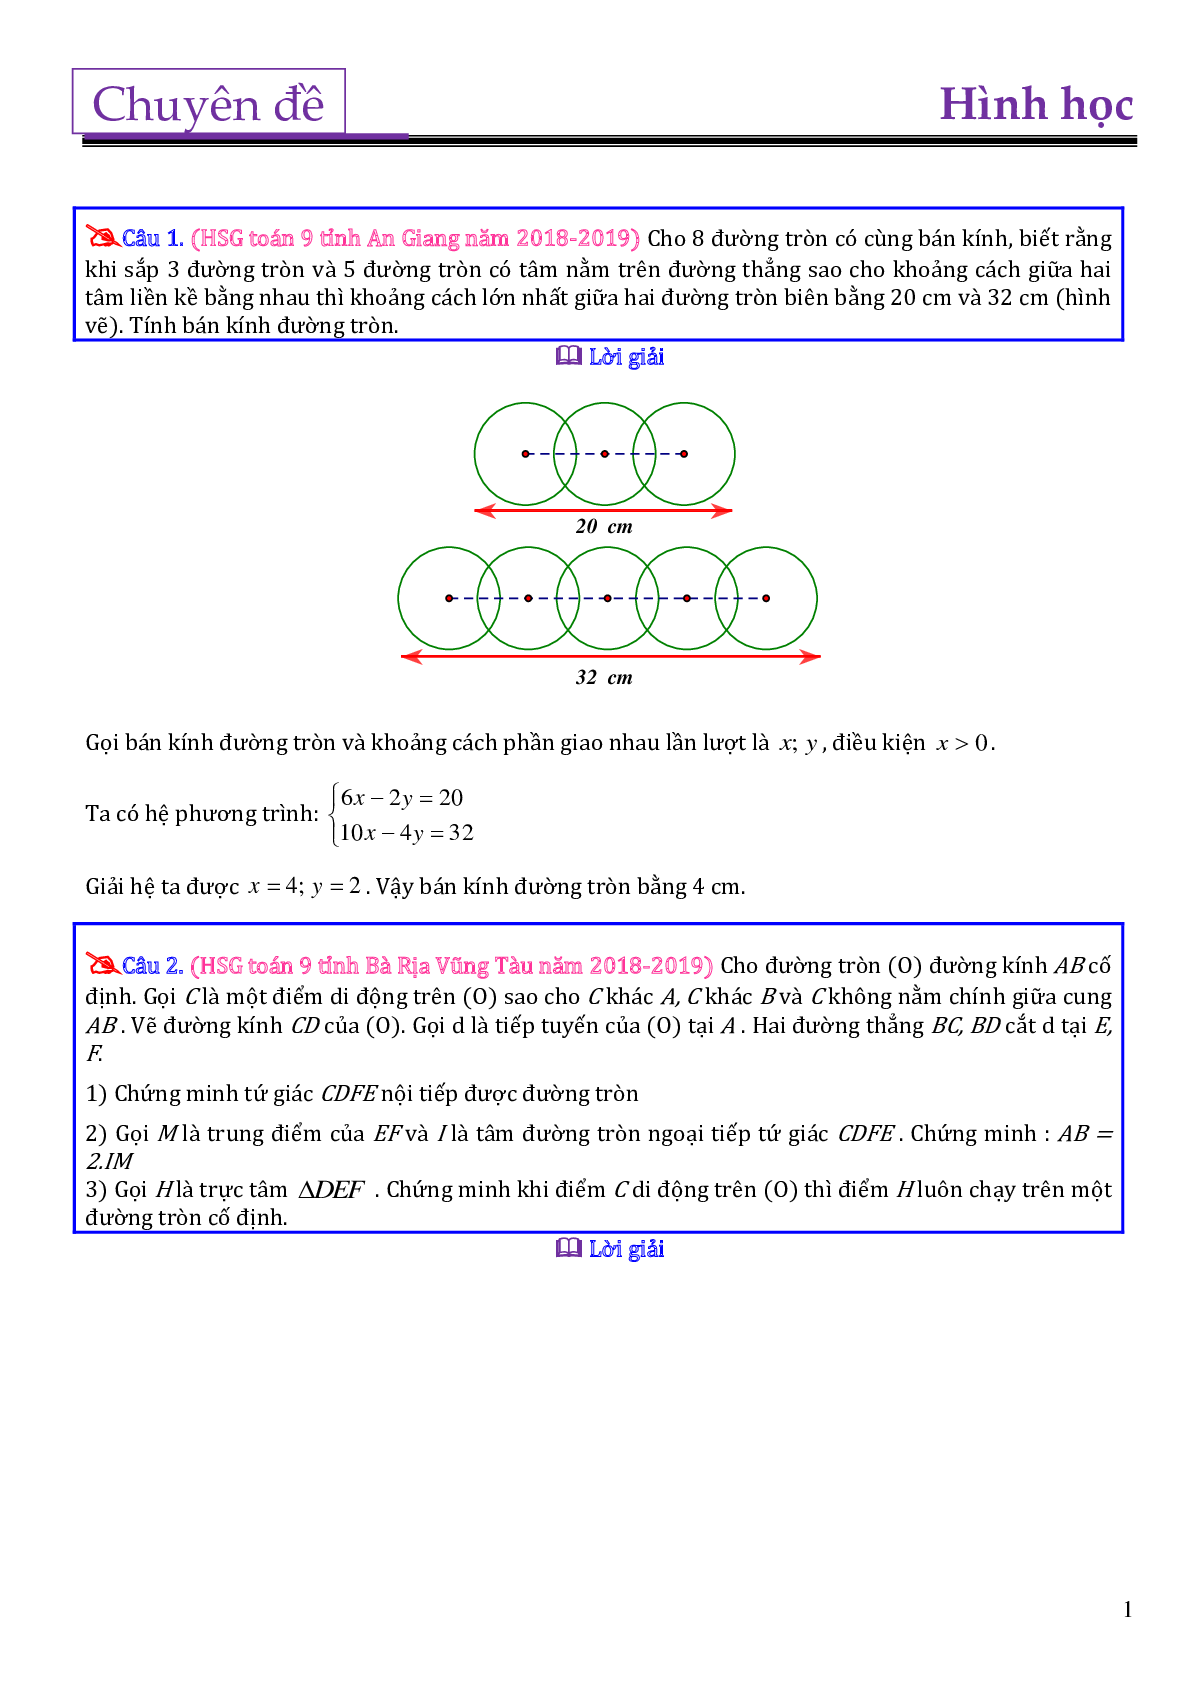 Các bài toán hình học trong đề thi học sinh giỏi toán lớp 9 (trang 1)